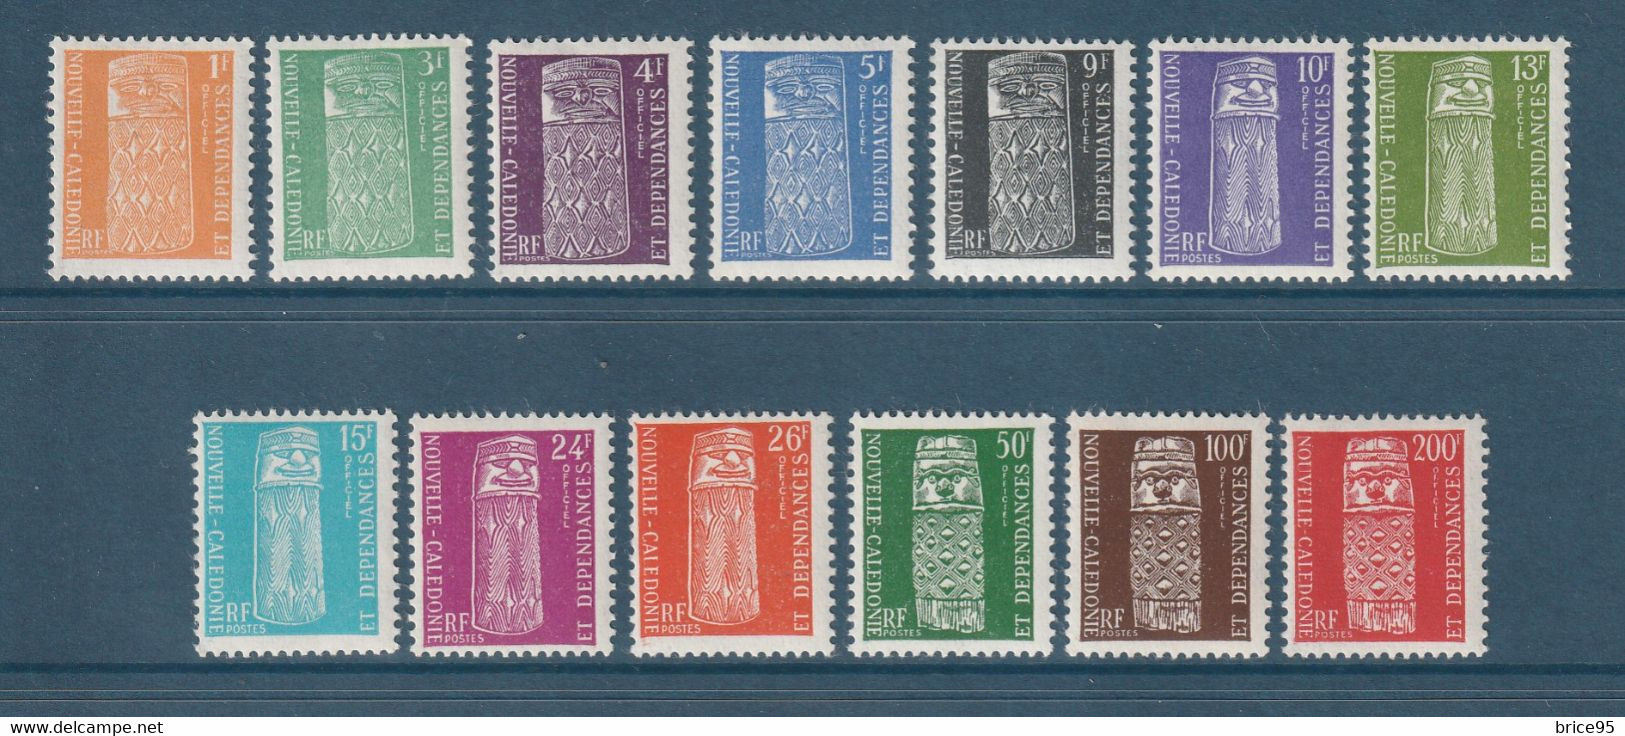 Nouvelle Calédonie - Service - YT N° 1 à 13 * - Neuf Avec Charnière - 1959 - Dienstmarken